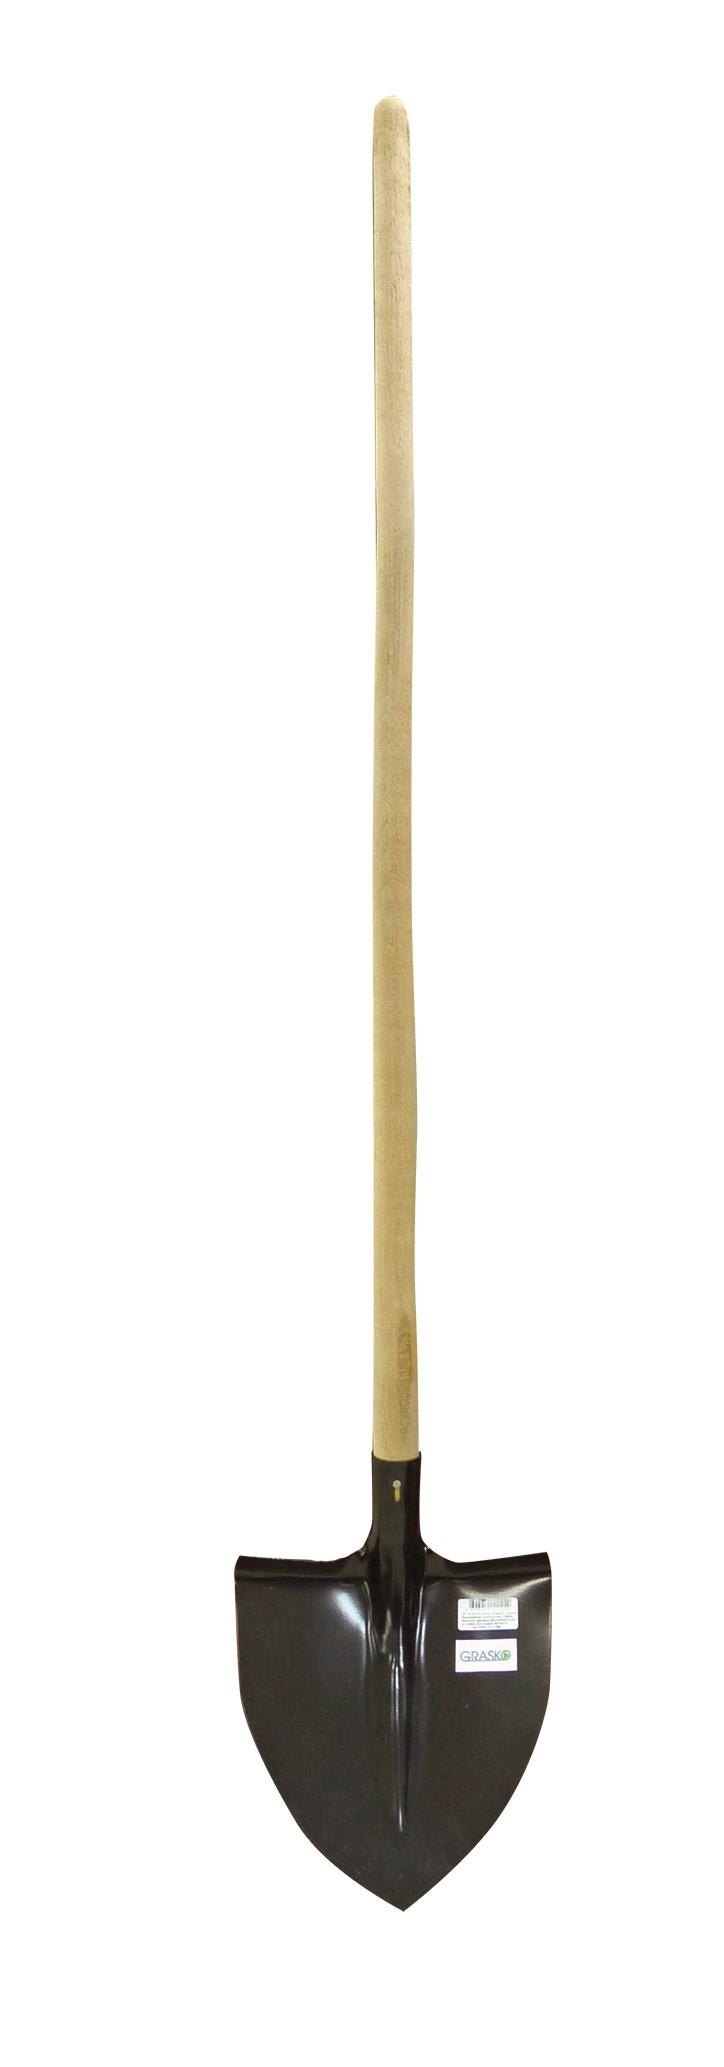 GRASKO Лопата канадска с дръжка 1280 мм (GR01170)